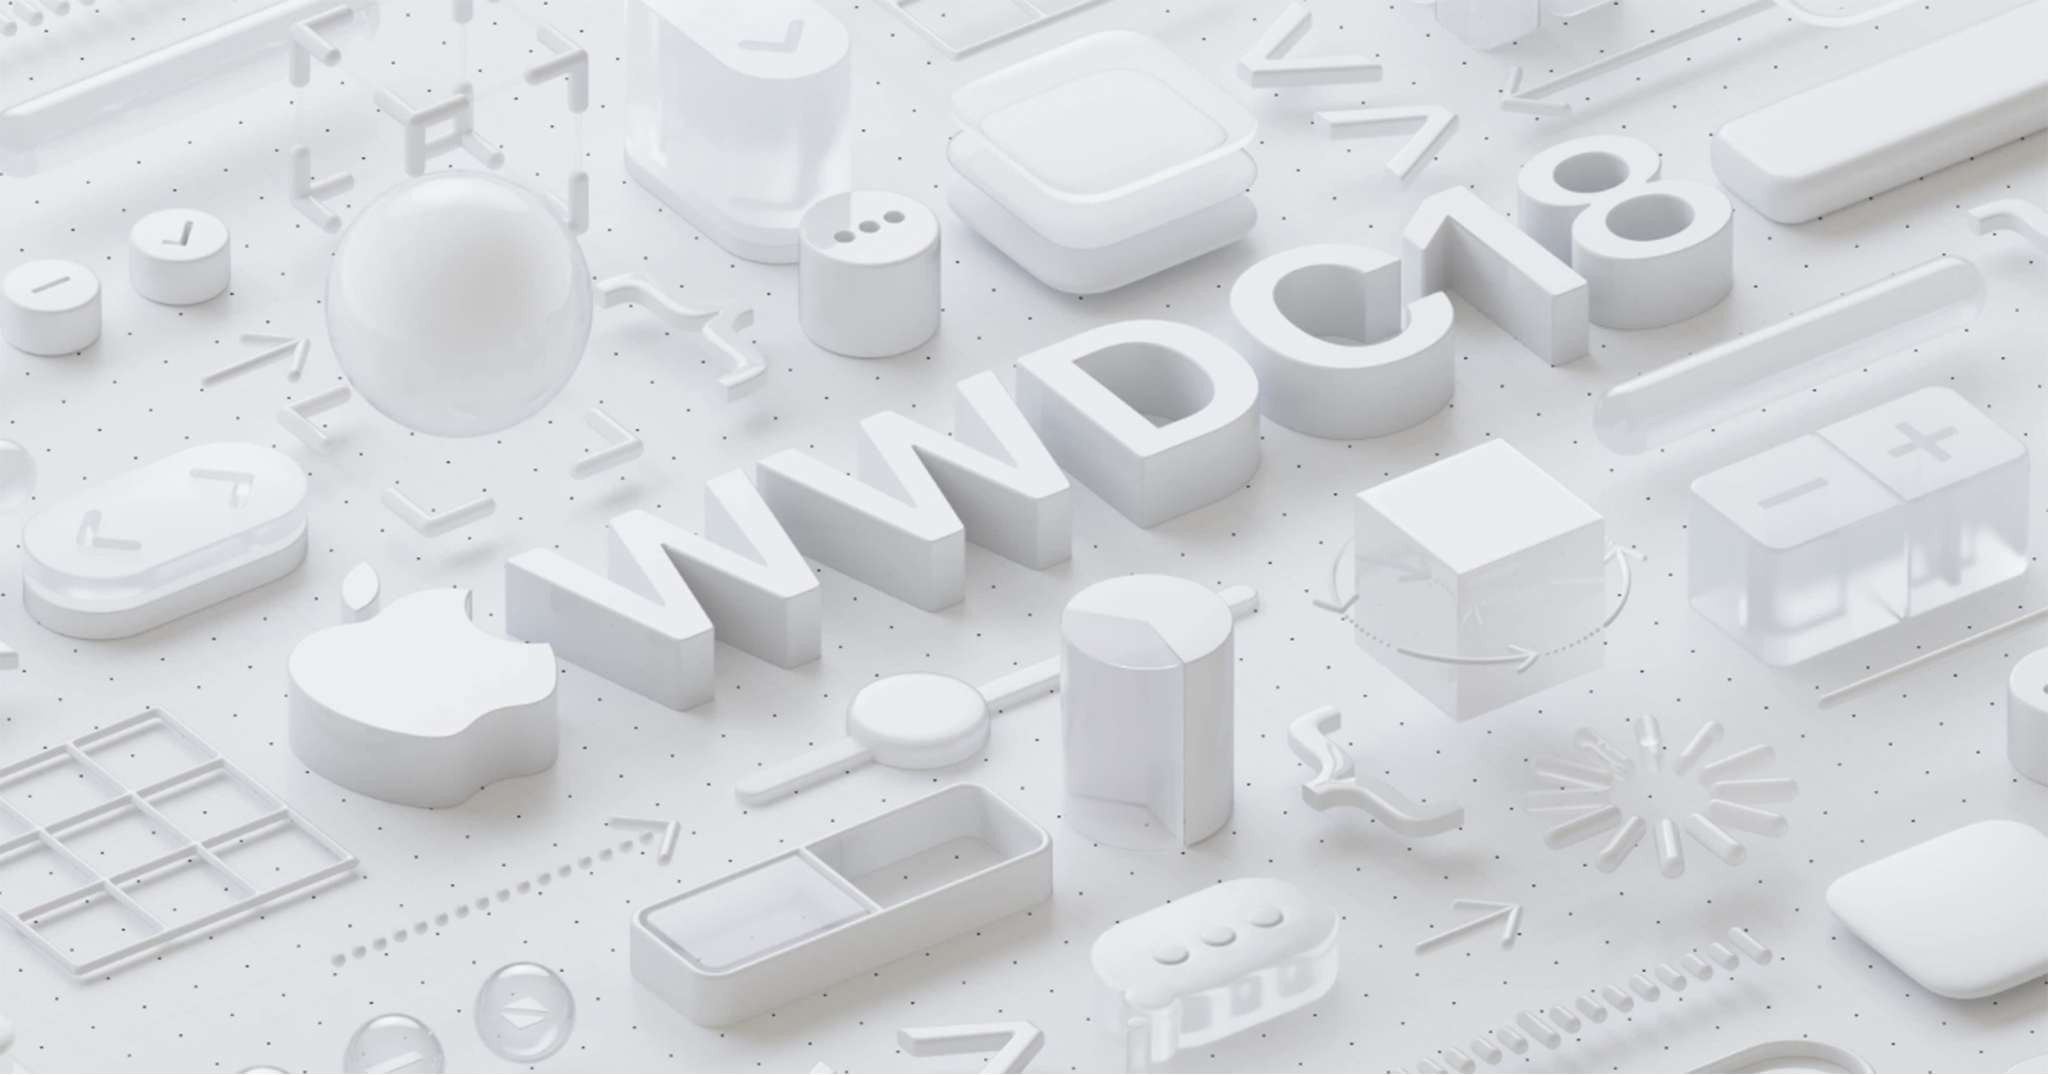 Sự kiện WWDC 2018 của Apple sẽ diễn ra từ 4/6, sẽ có iOS và macOS mới